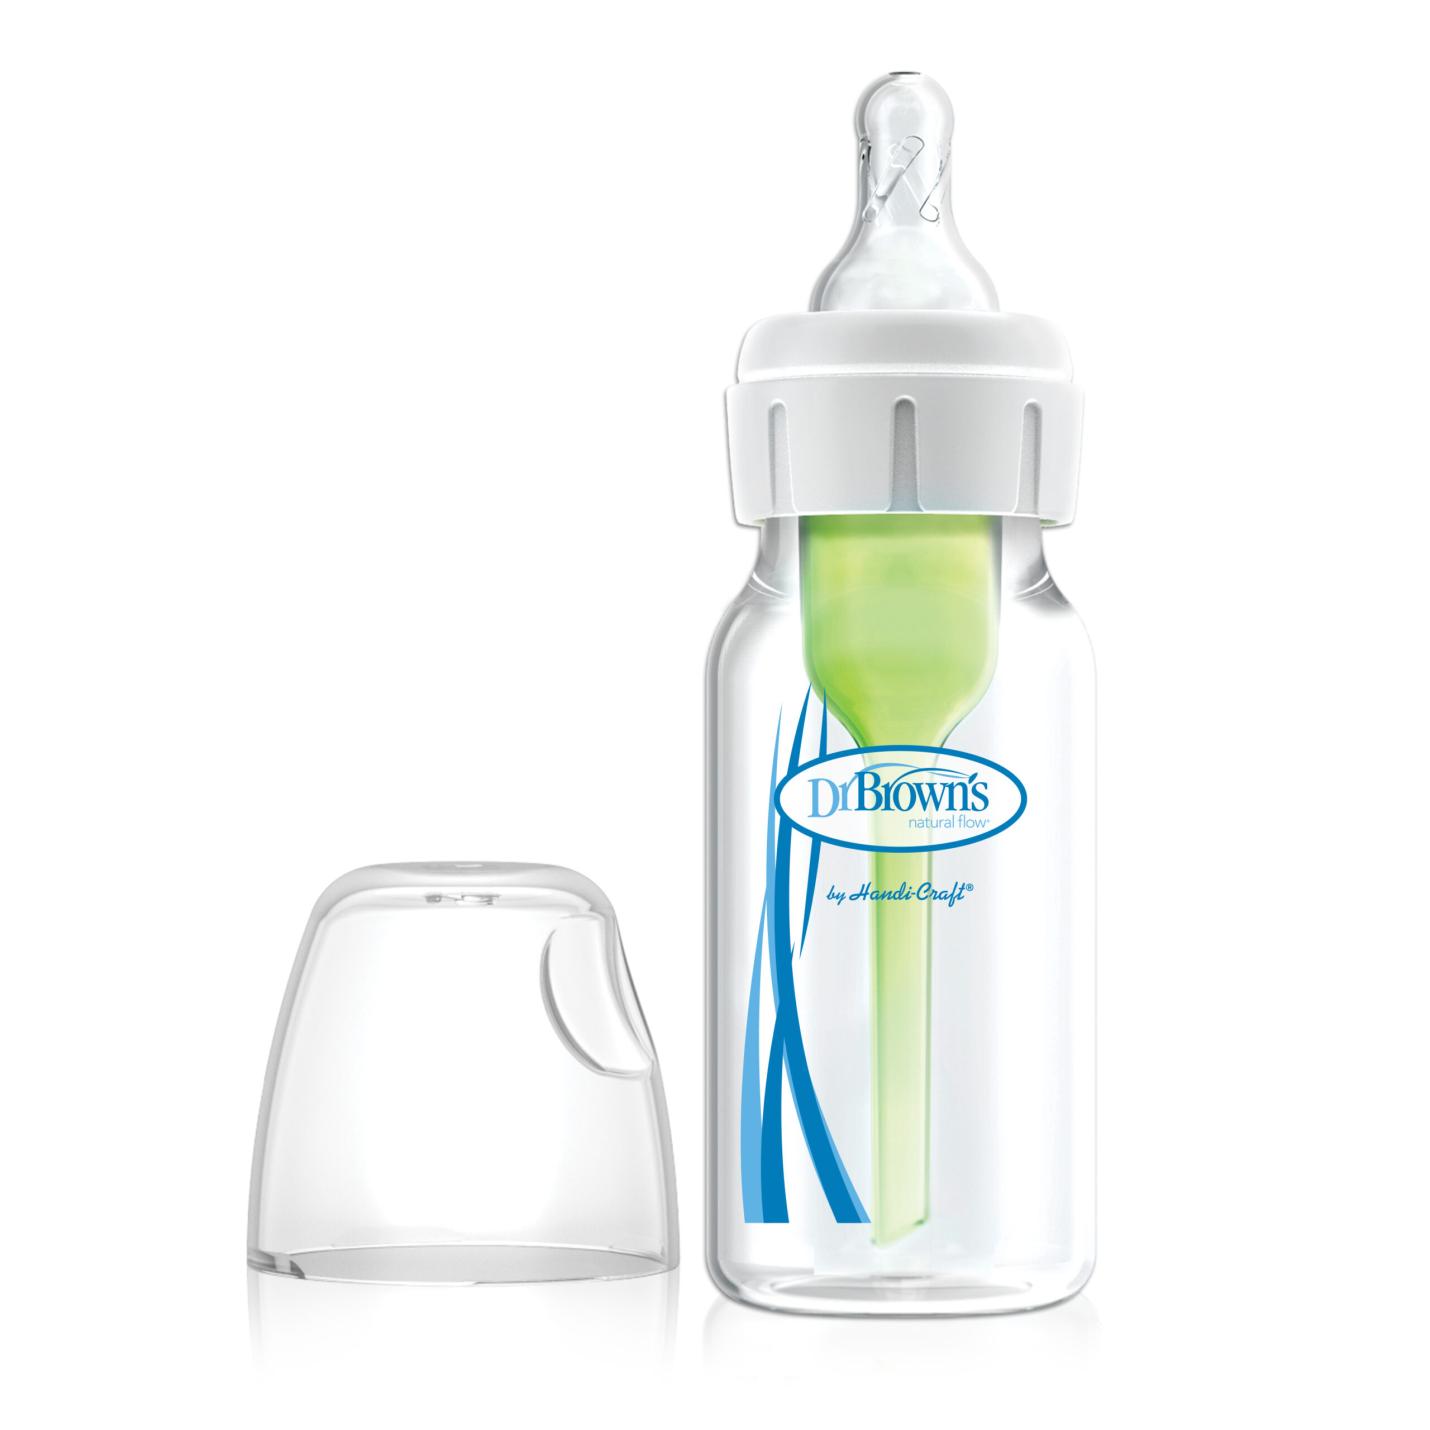 Smalle Halsfles 120ml is een transparante smalle baby fles met blauw logo van Dr.Brown's en groen ventiel/pijpje in de fles inclusief transparante speen in witte ring op hals fles